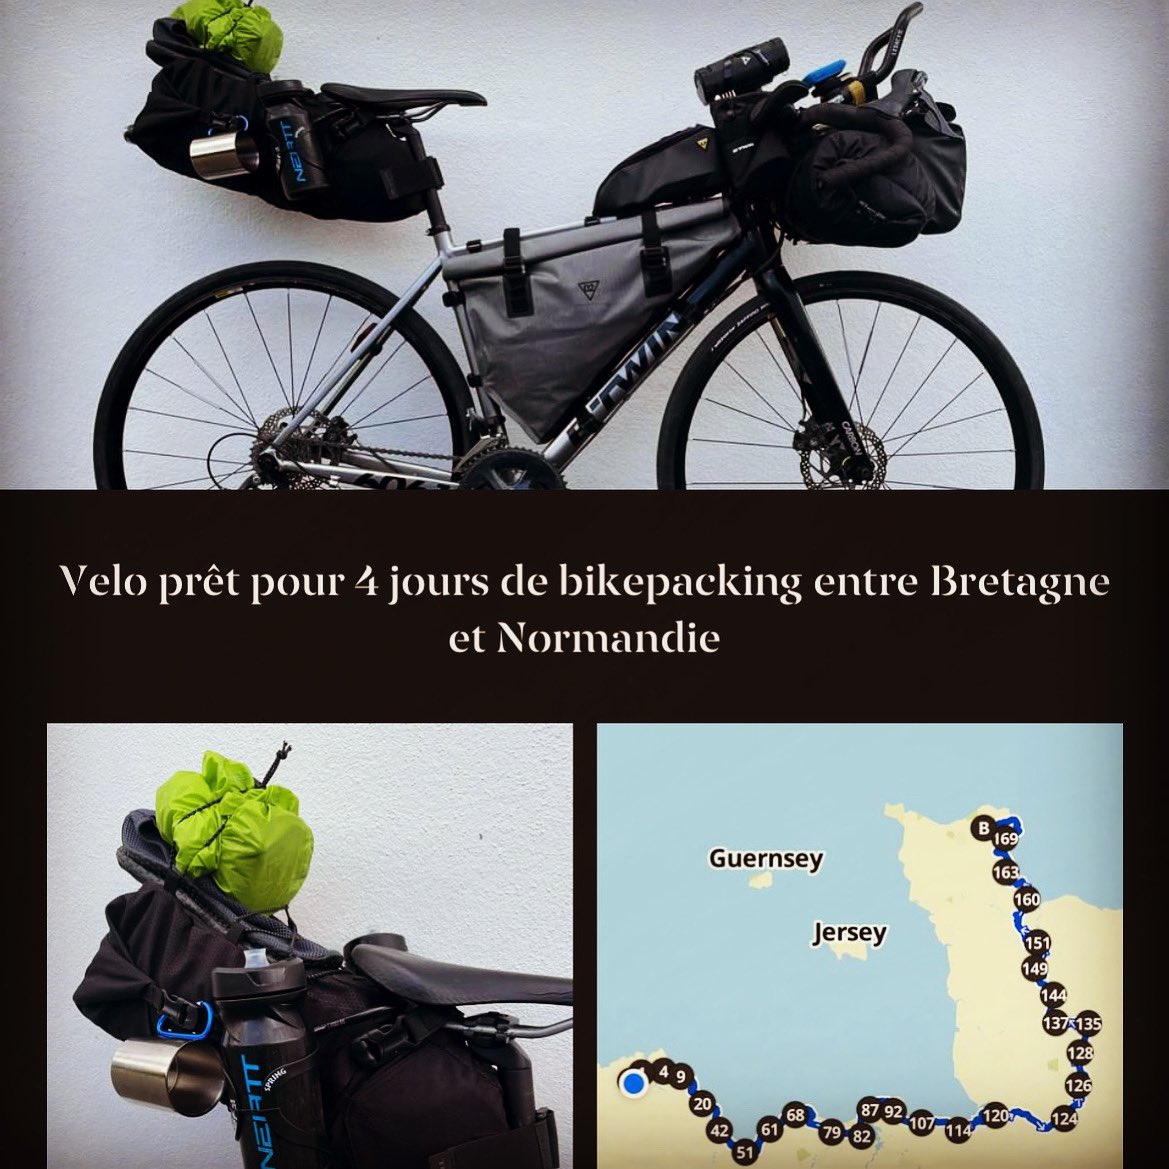 Mon premier bikepacking entre Bretagne et Normandie 4 jours 540 km de velo prévu. Départ demain le long de l’euro velo 4 :) 
#bikepacking #microaventure #bikelife #cycling #bzh #normandie #eurovelo4 #komoot